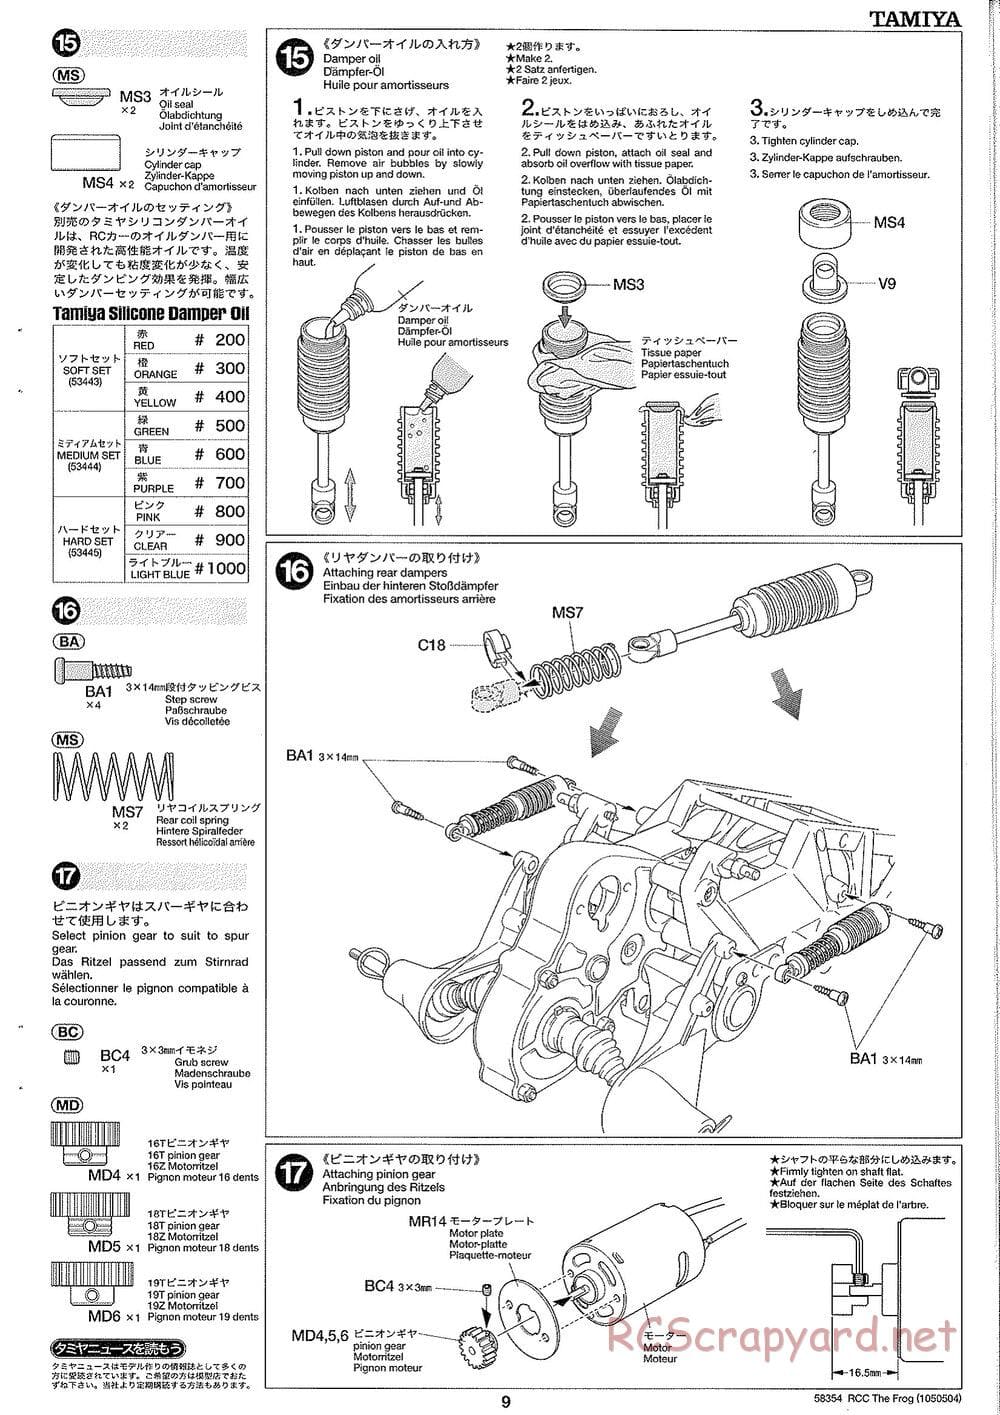 Tamiya - The Frog - 2005 - ORV Chassis - Manual - Page 9